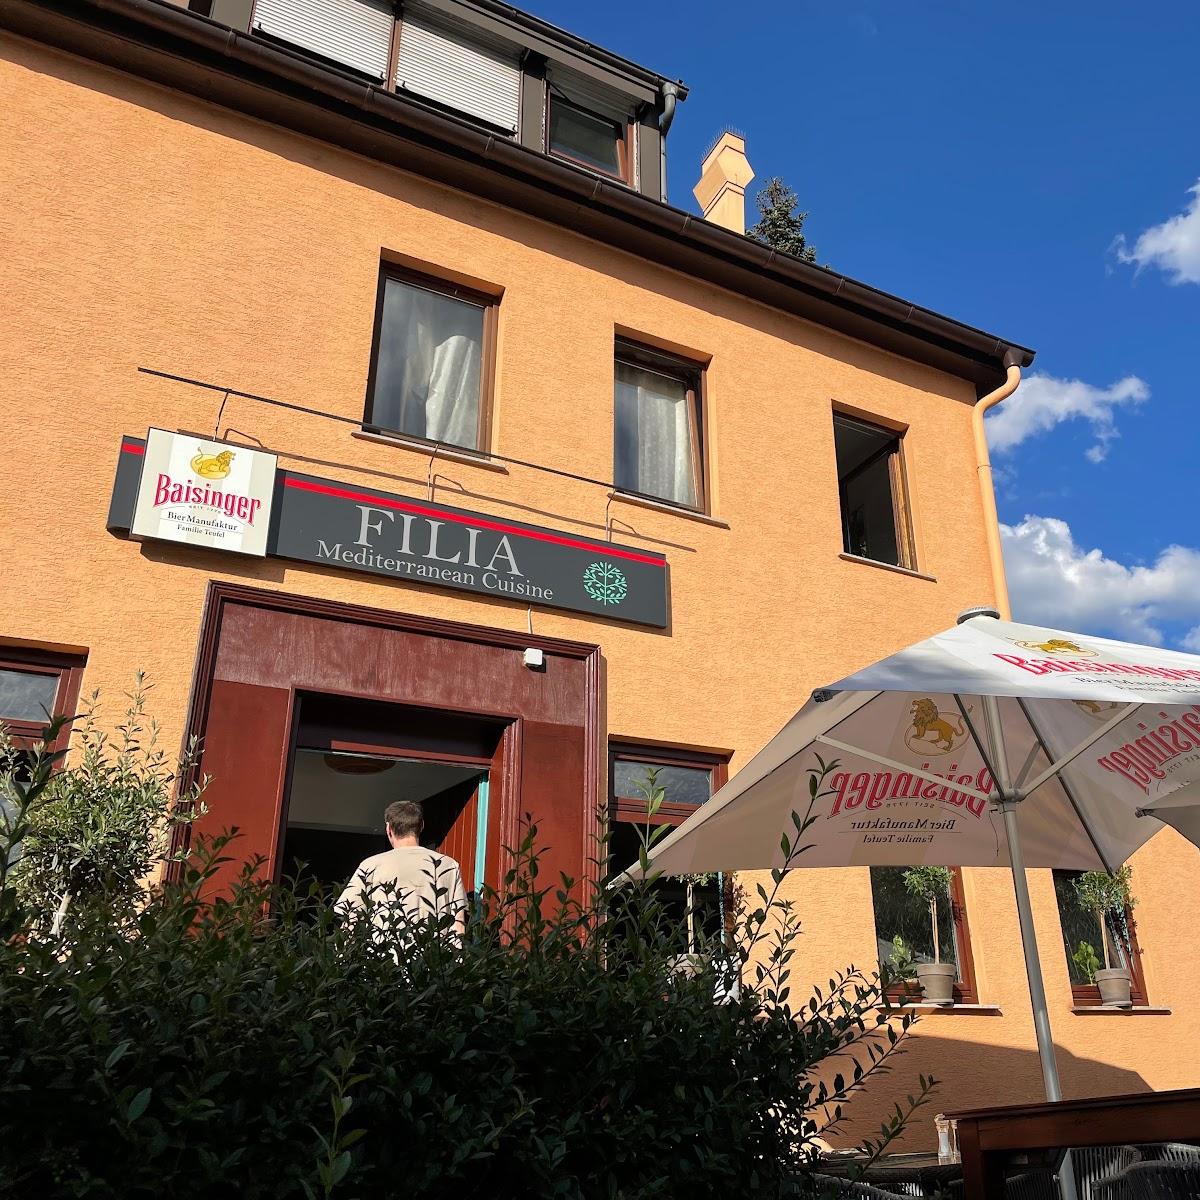 Restaurant "Filia Mediterranean Cuisine" in Waiblingen